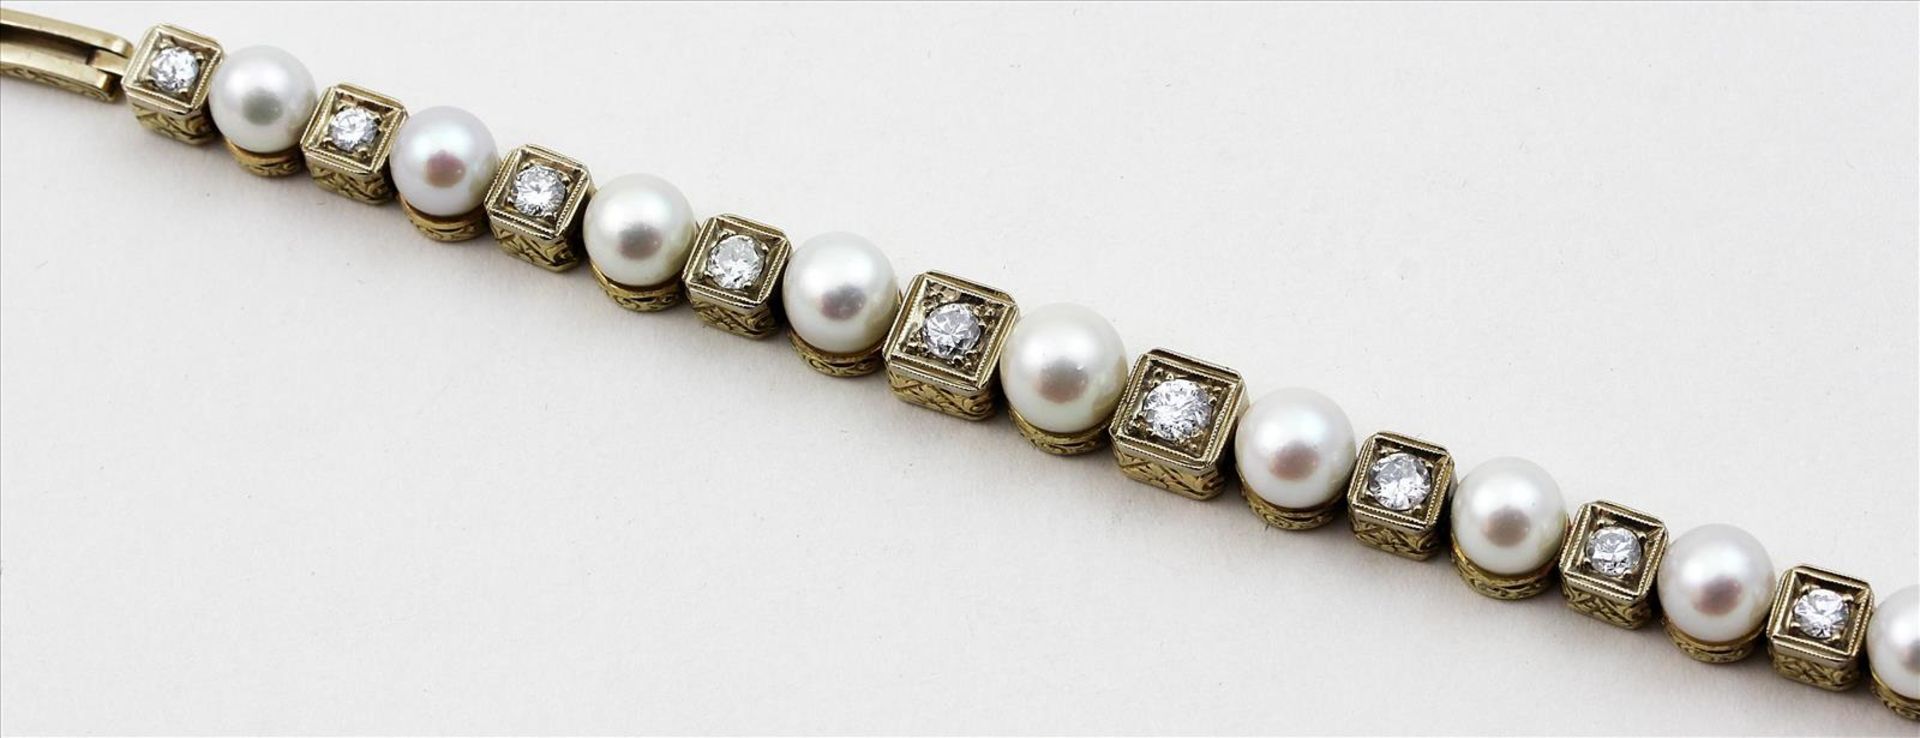 Art Deco-Damenarmband.585/000 GG, brutto 24,2 g. Seitlich ziselierte Glieder, abwechselnd besetzt - Bild 2 aus 2